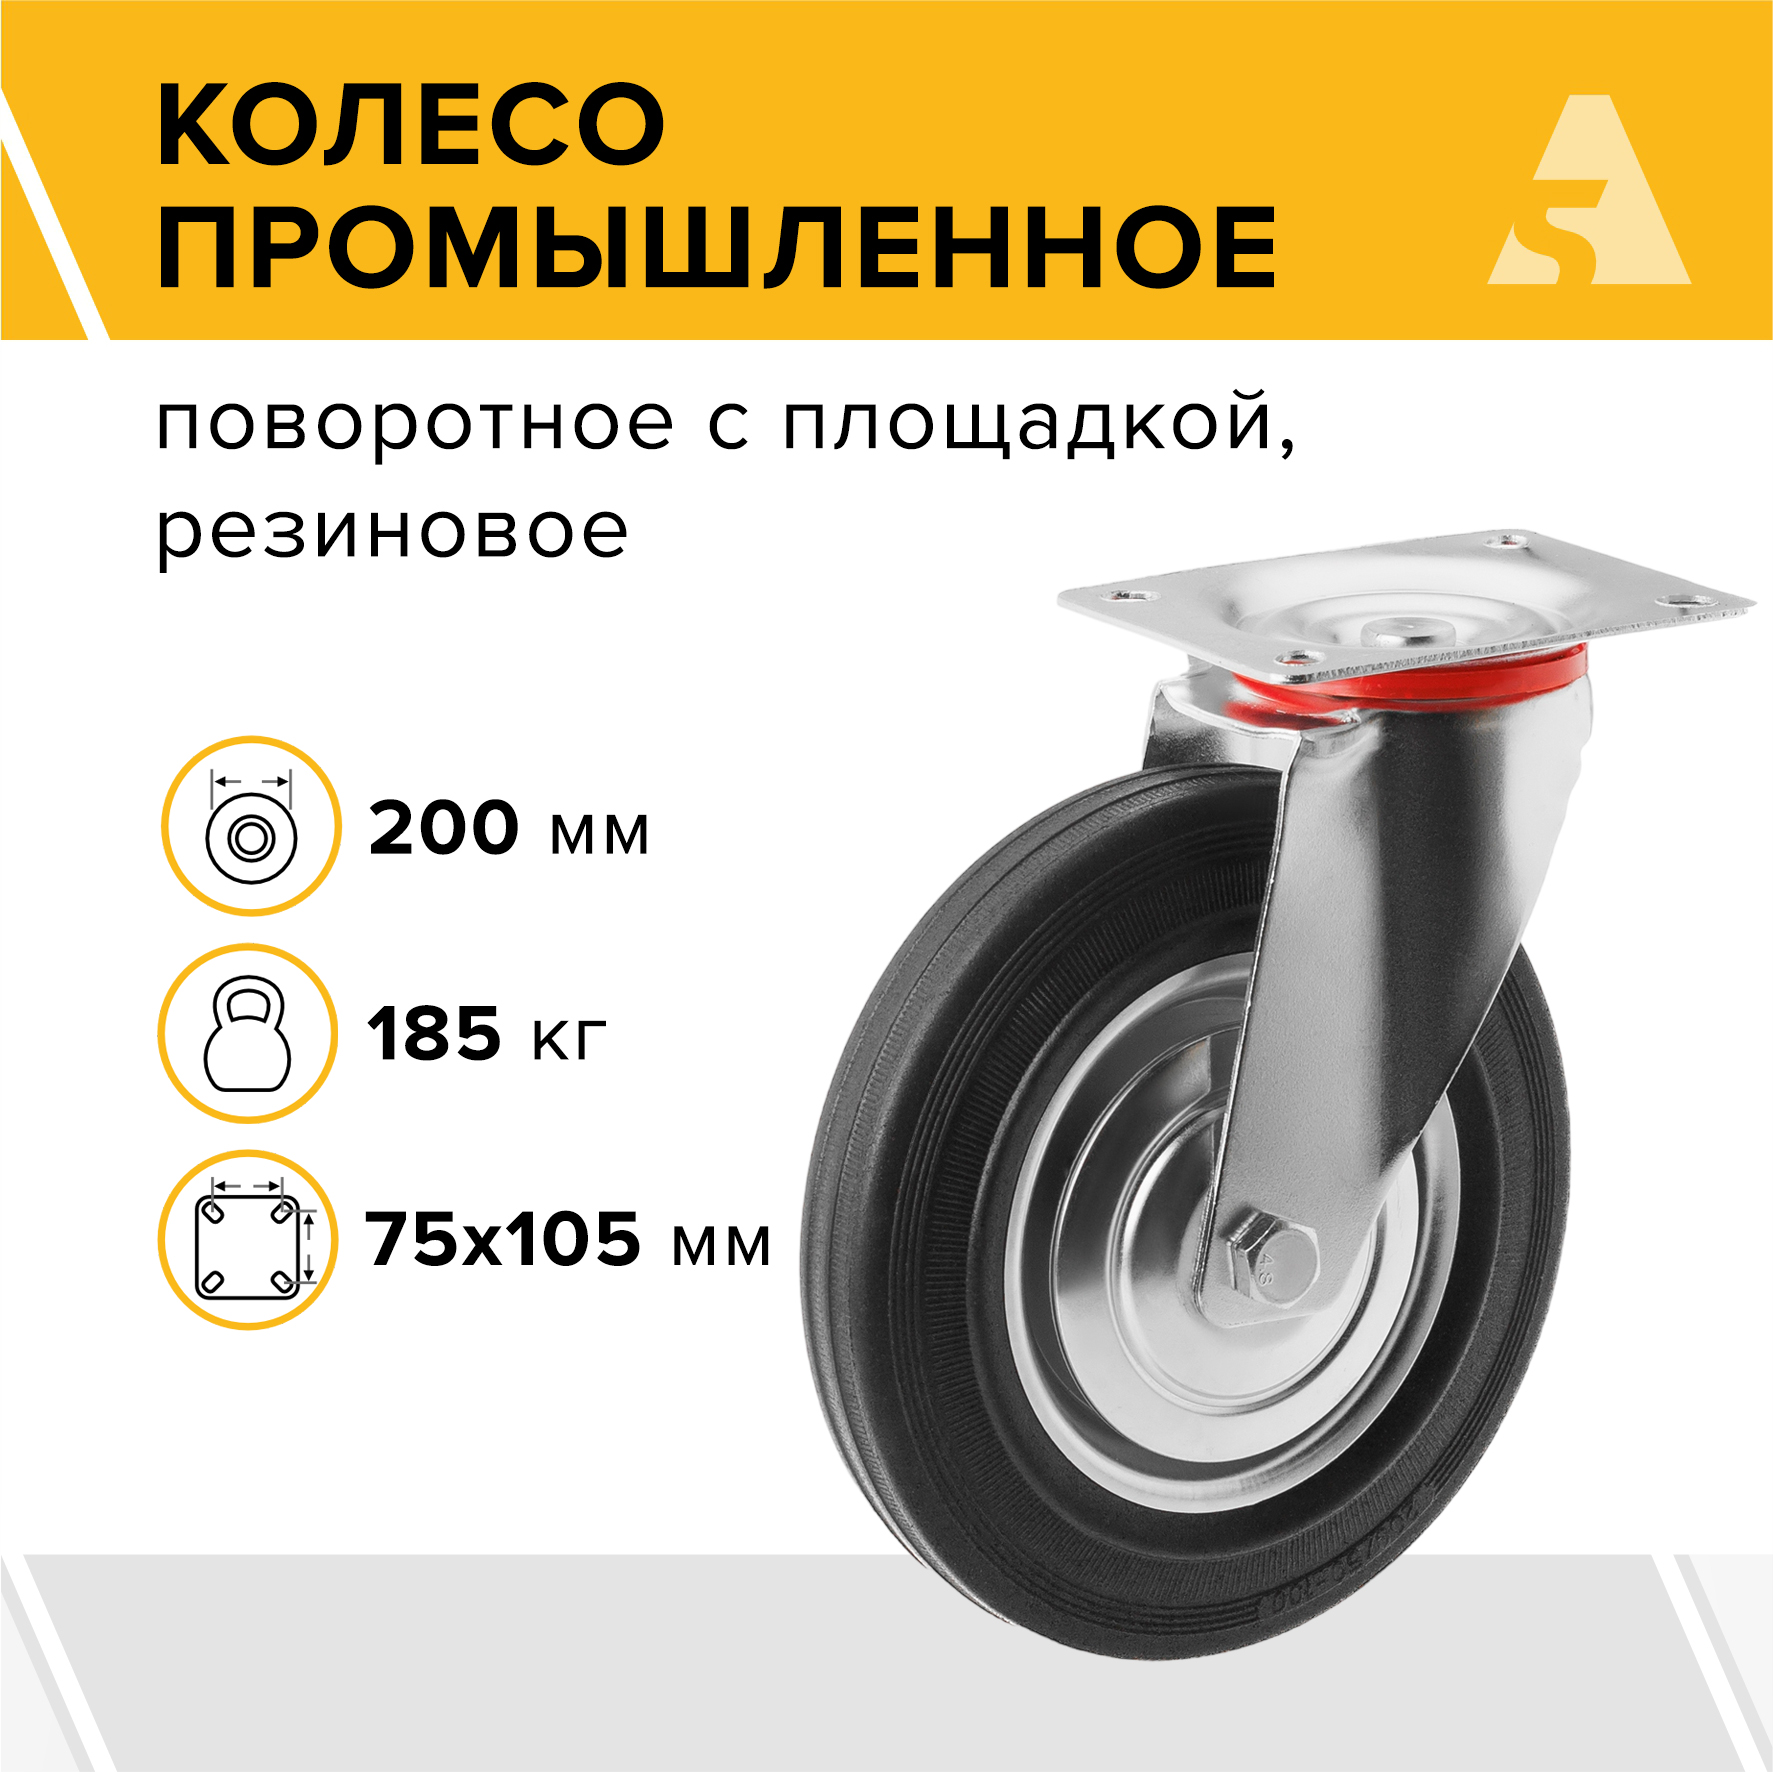 промышленное поворотное колесо а5 Колесо промышленное А5 SC 80 1000011